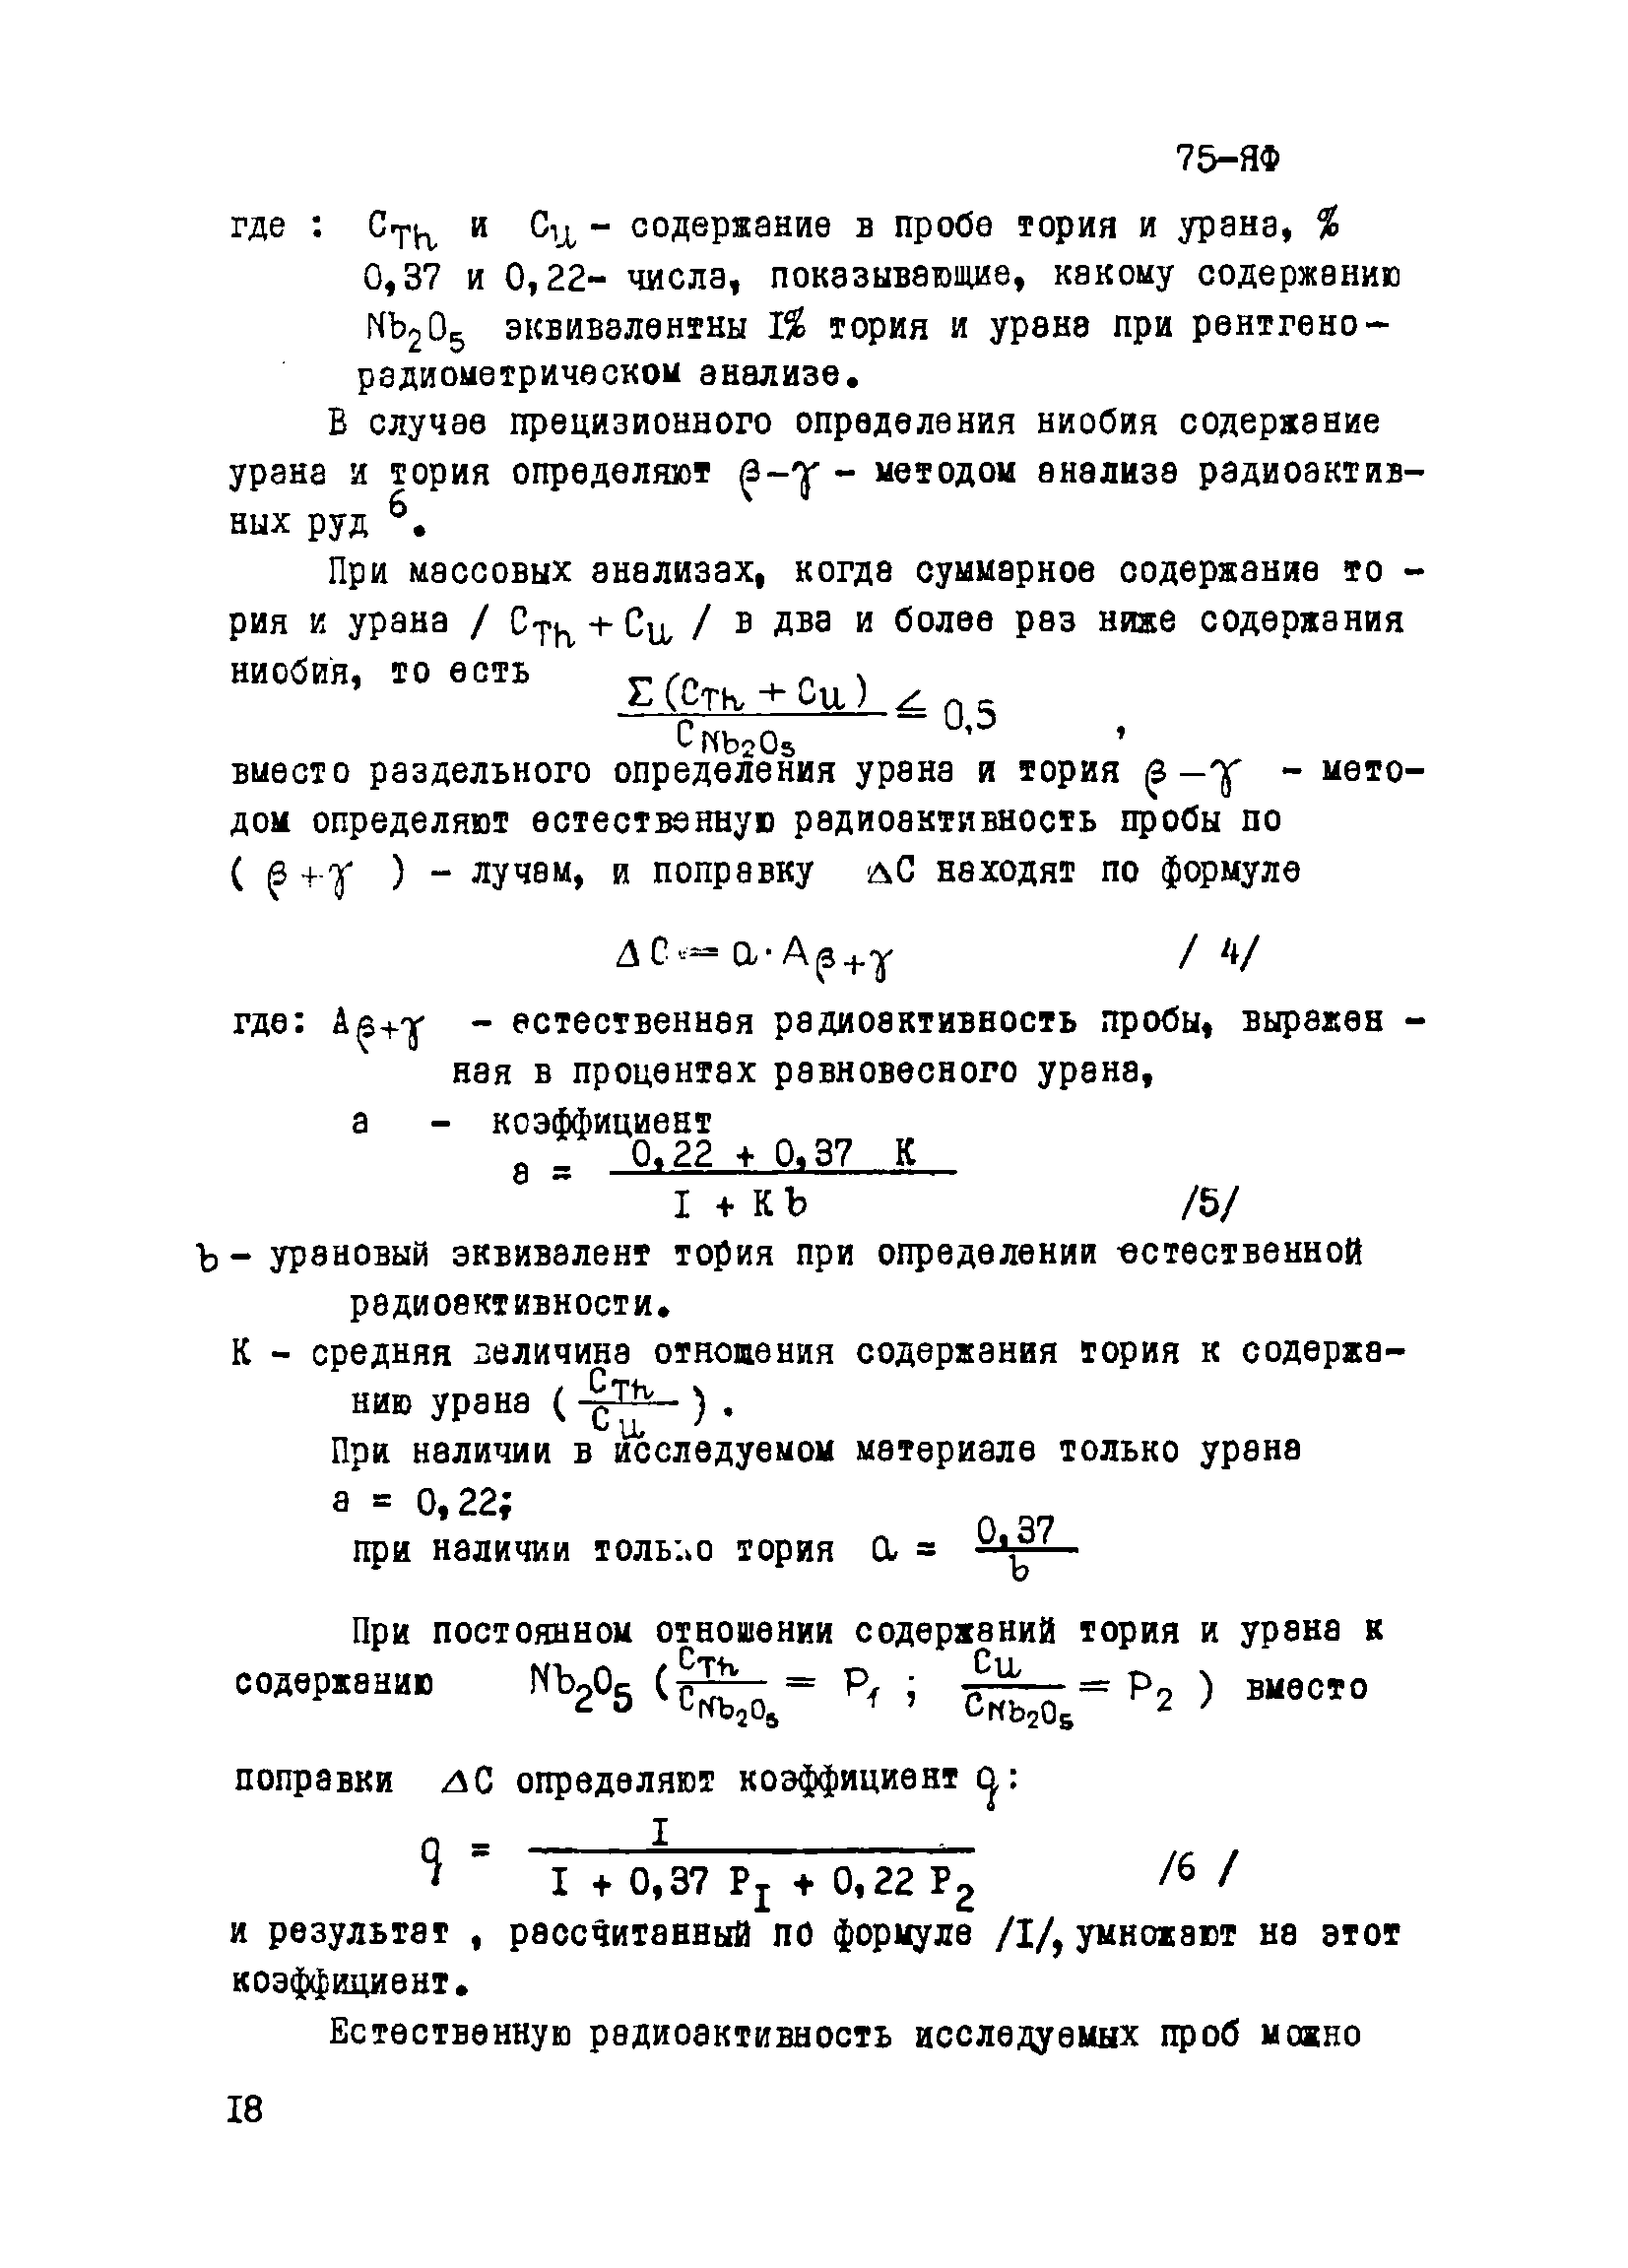 Инструкция НСАМ 75-ЯФ